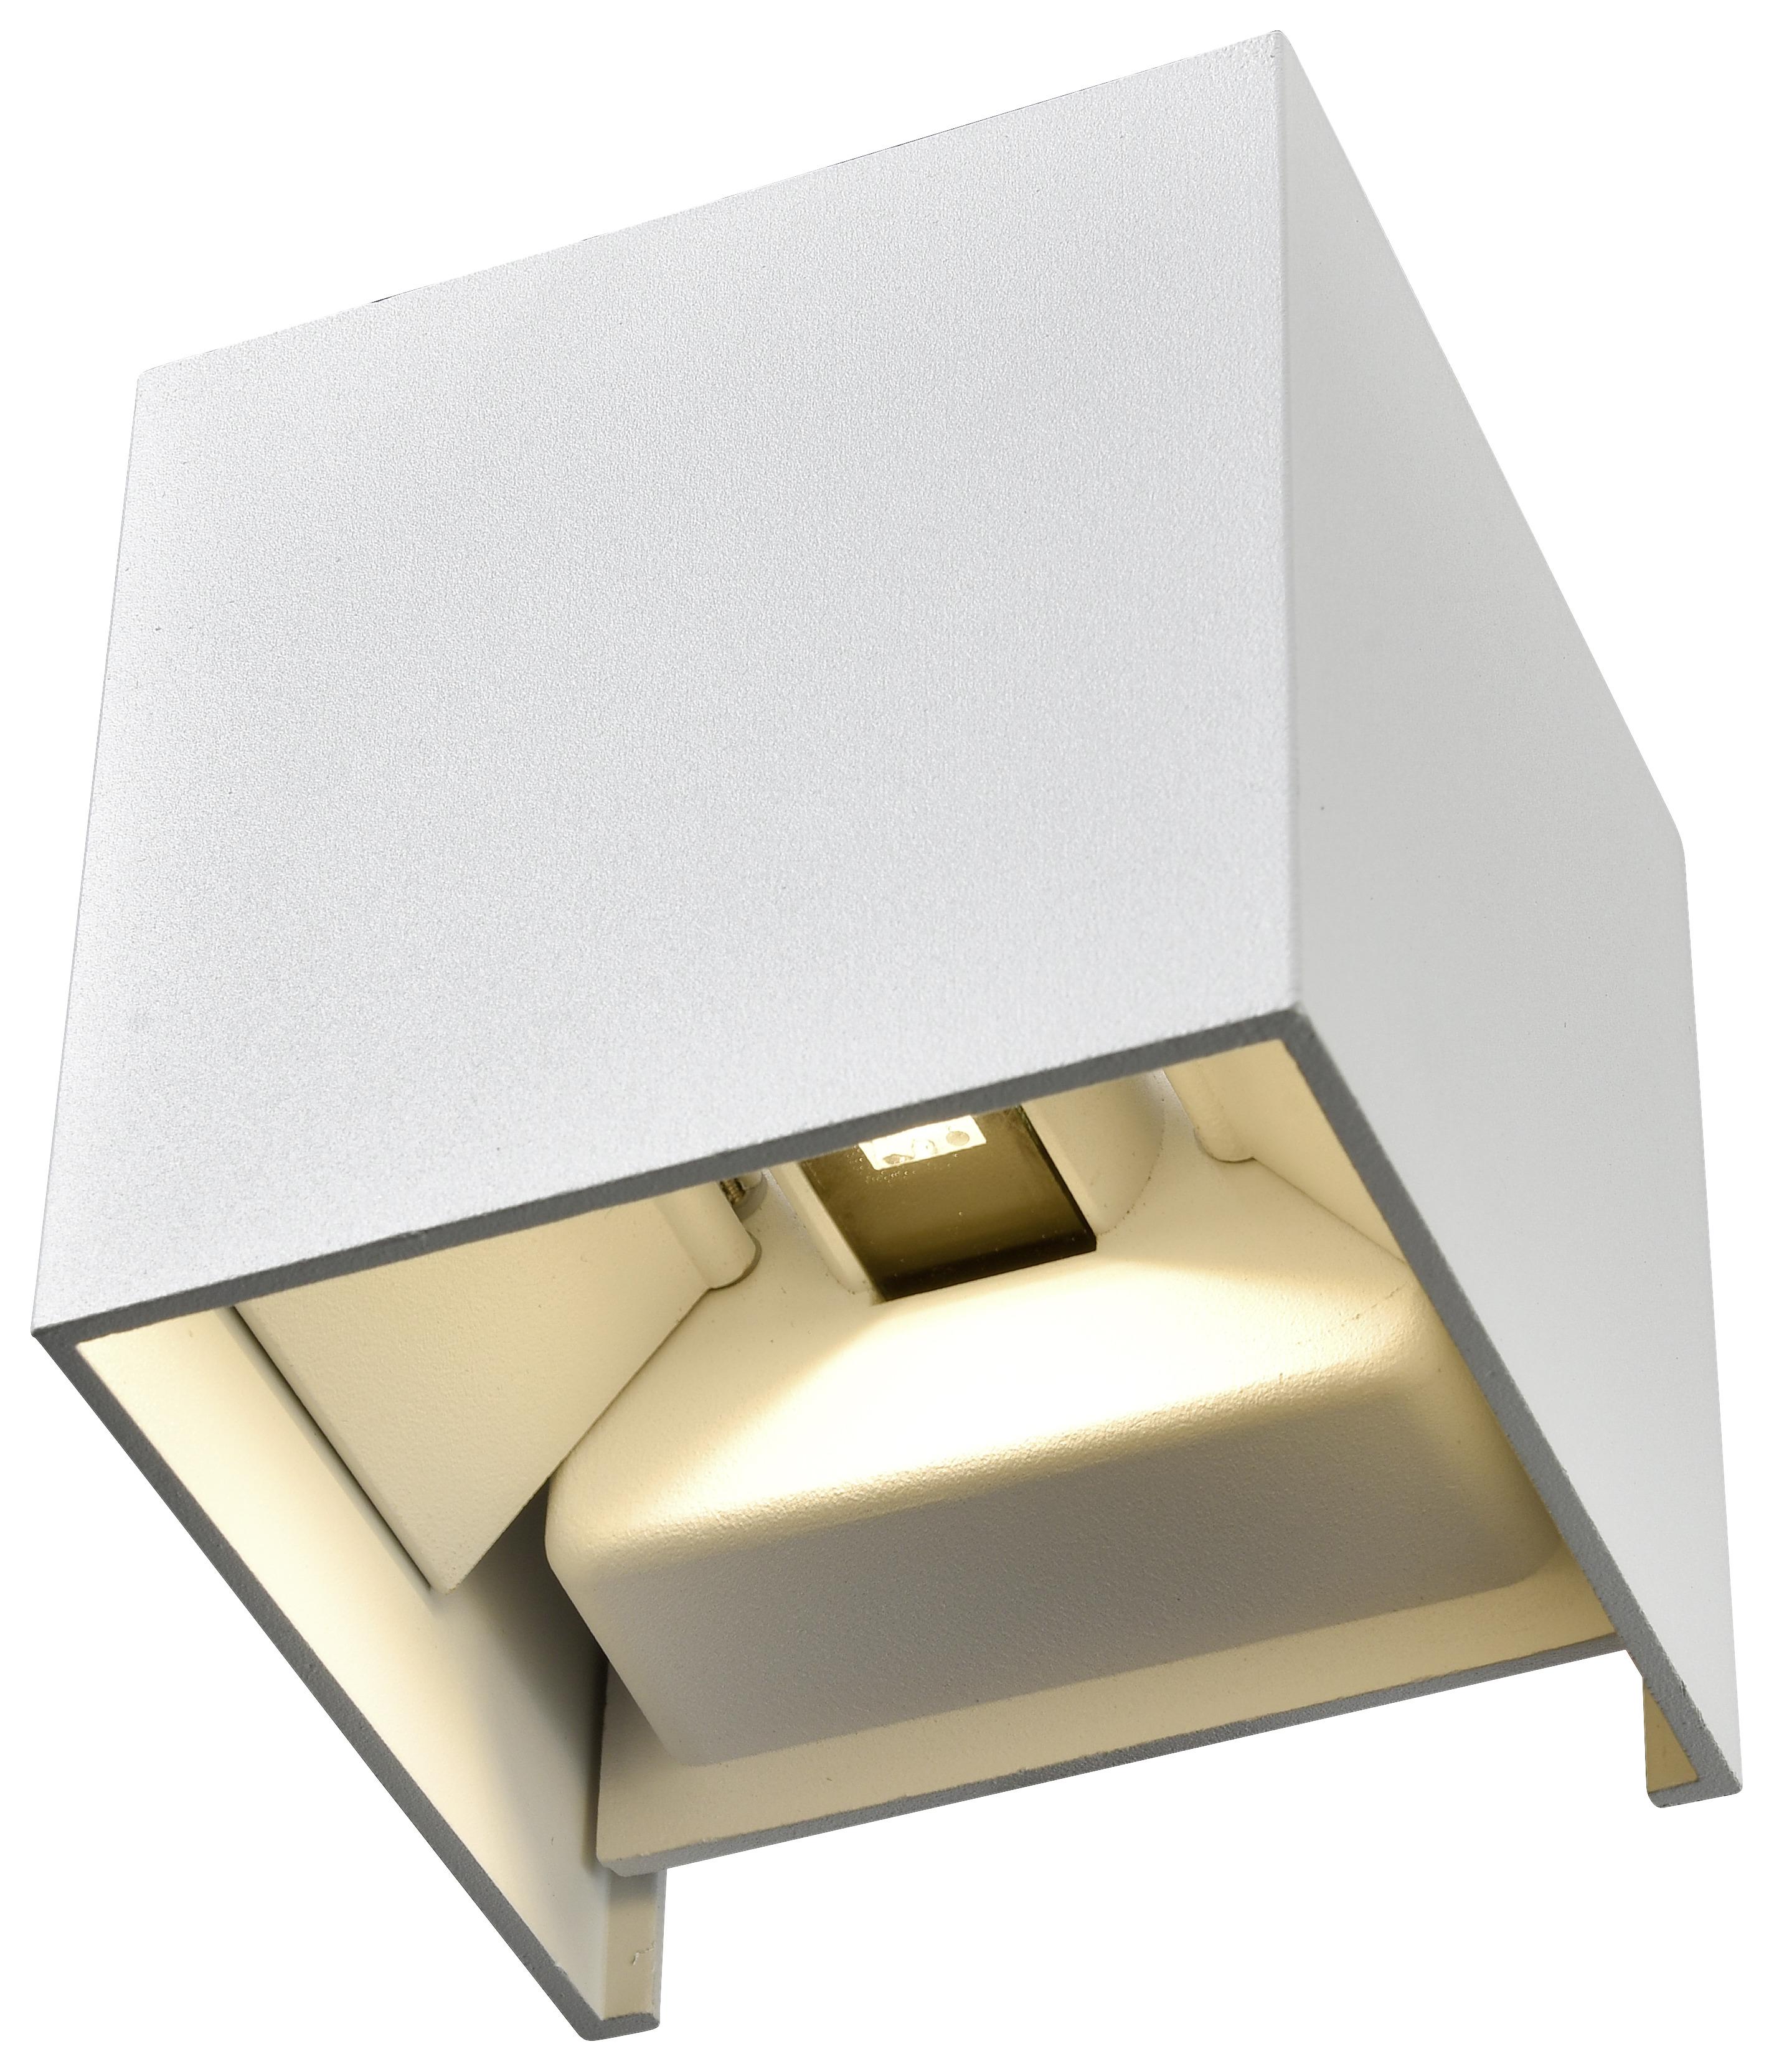 Stenska Led-svetilka Kubik - bela, Trendi, kovina (10cm) - Modern Living